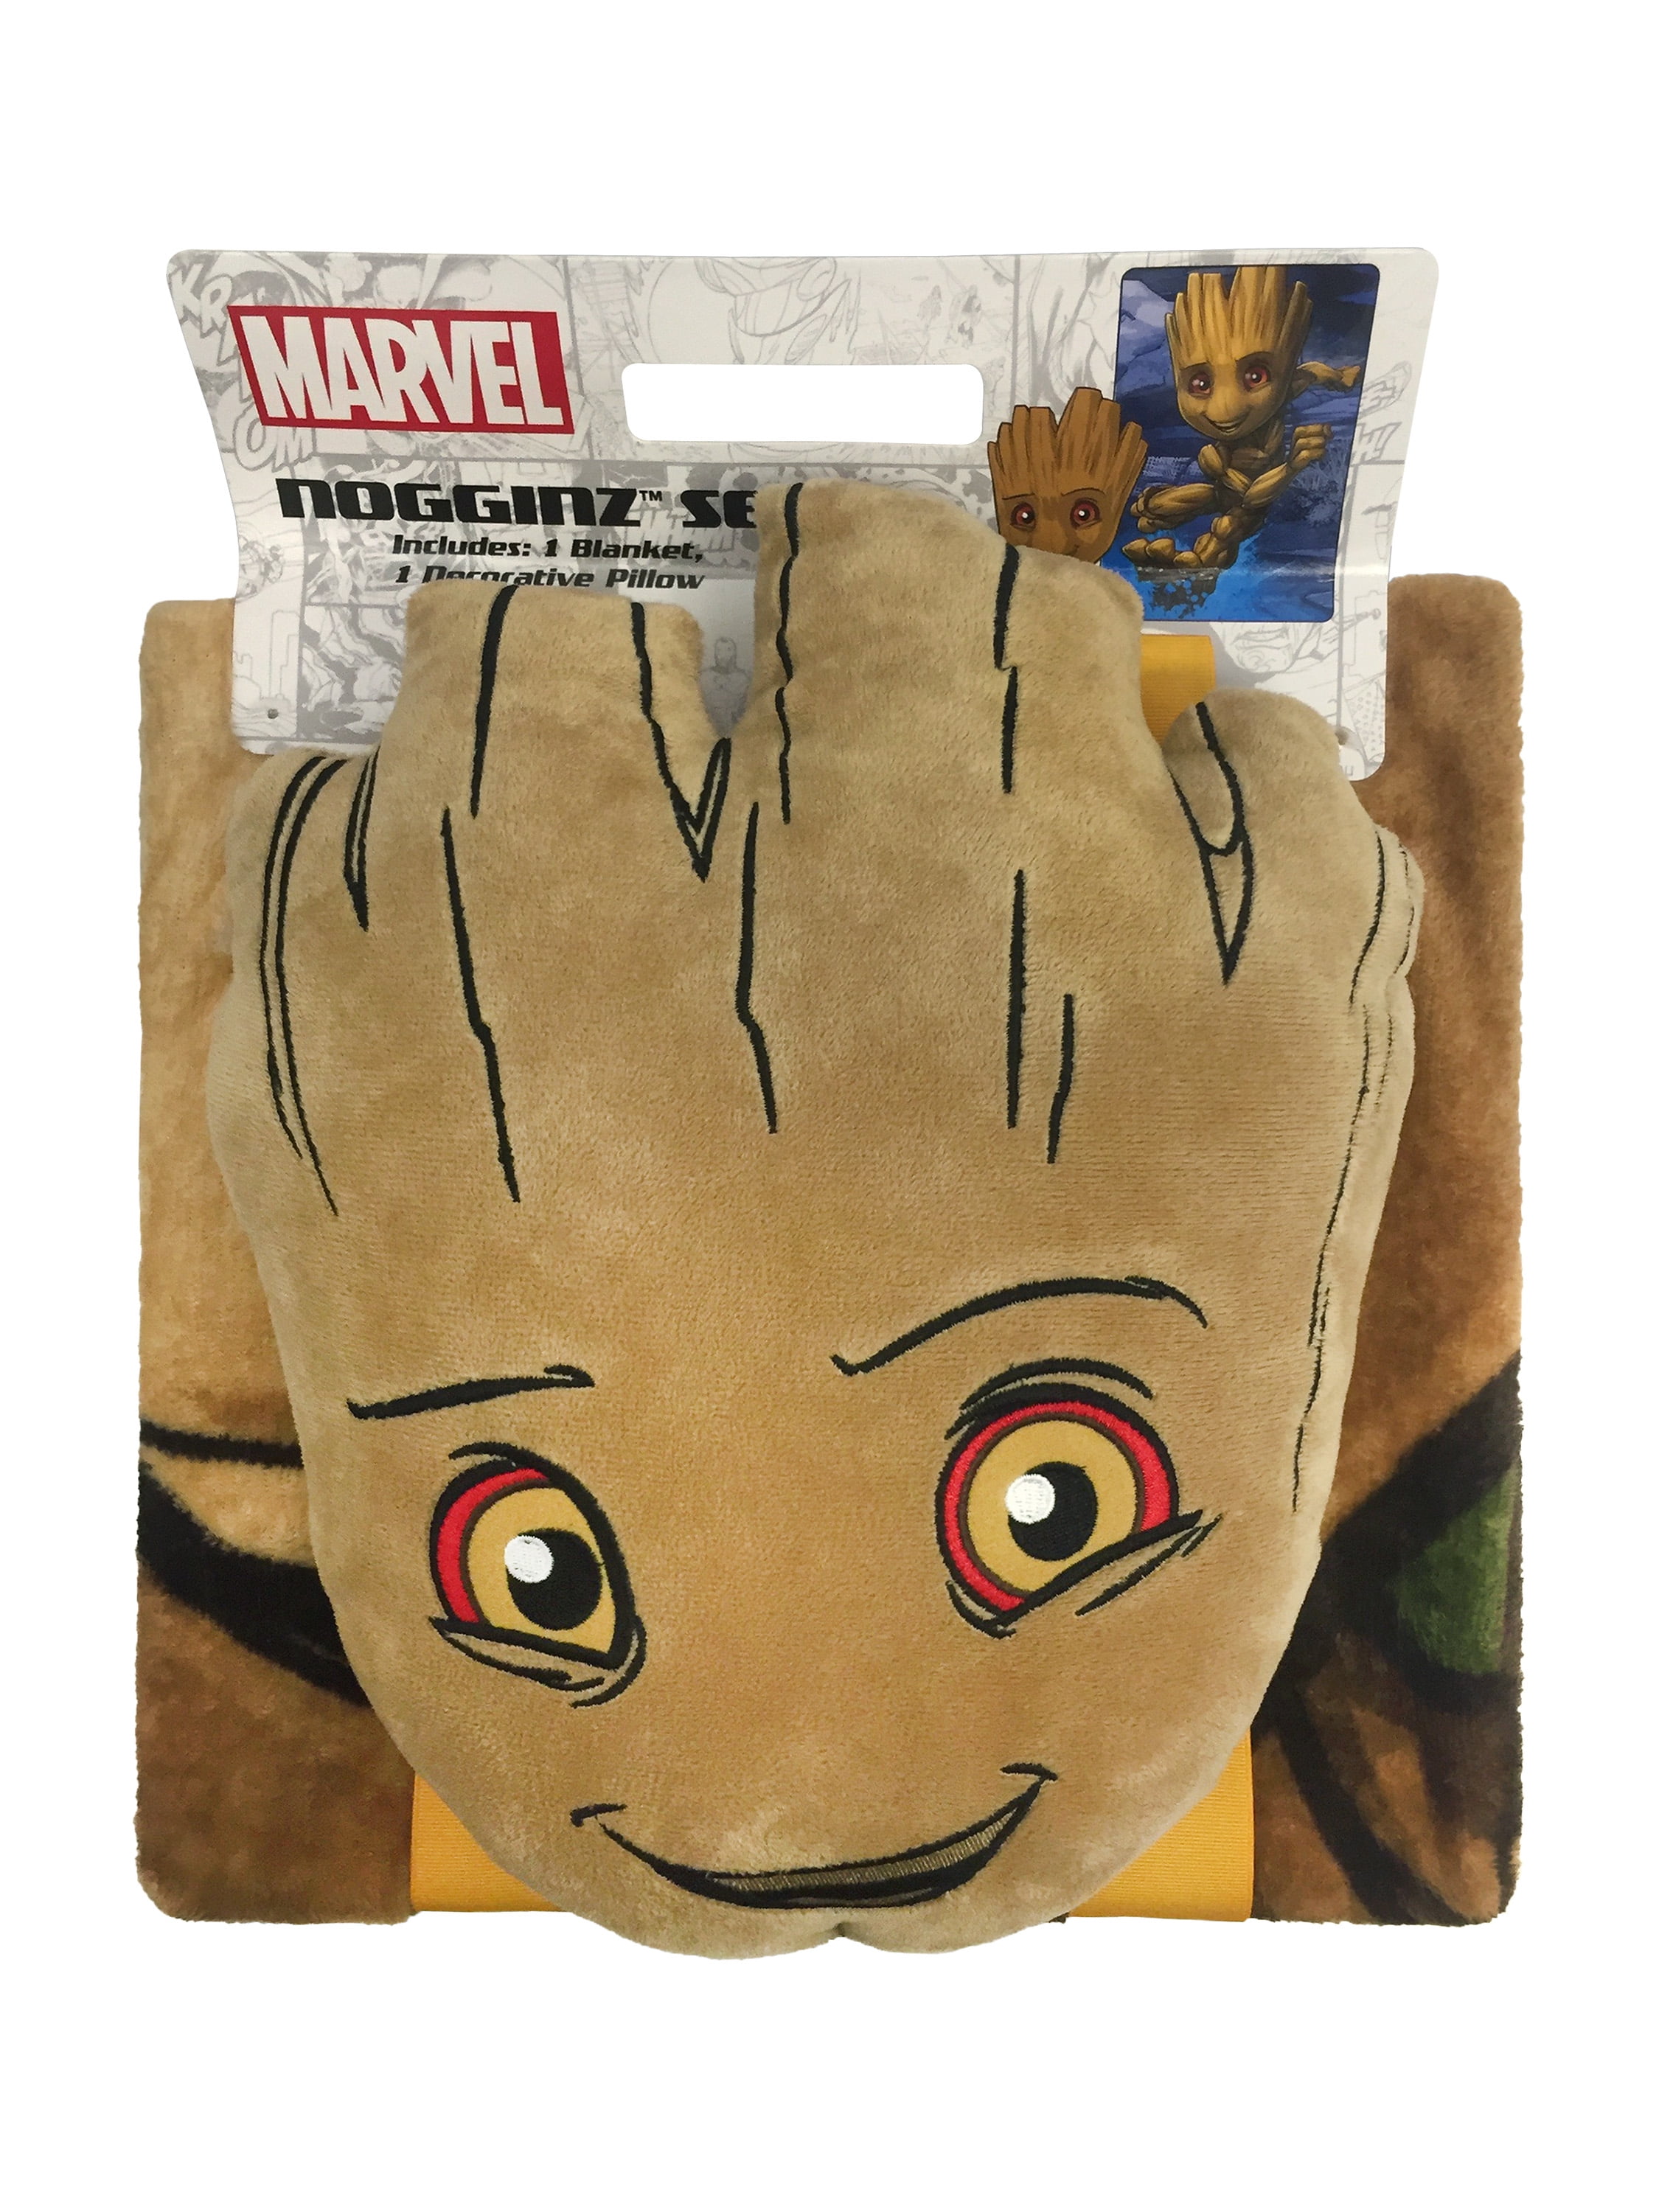 Marvel Groot Noggin Pillow and Blanket Kid's Bedding Set - Walmart.com